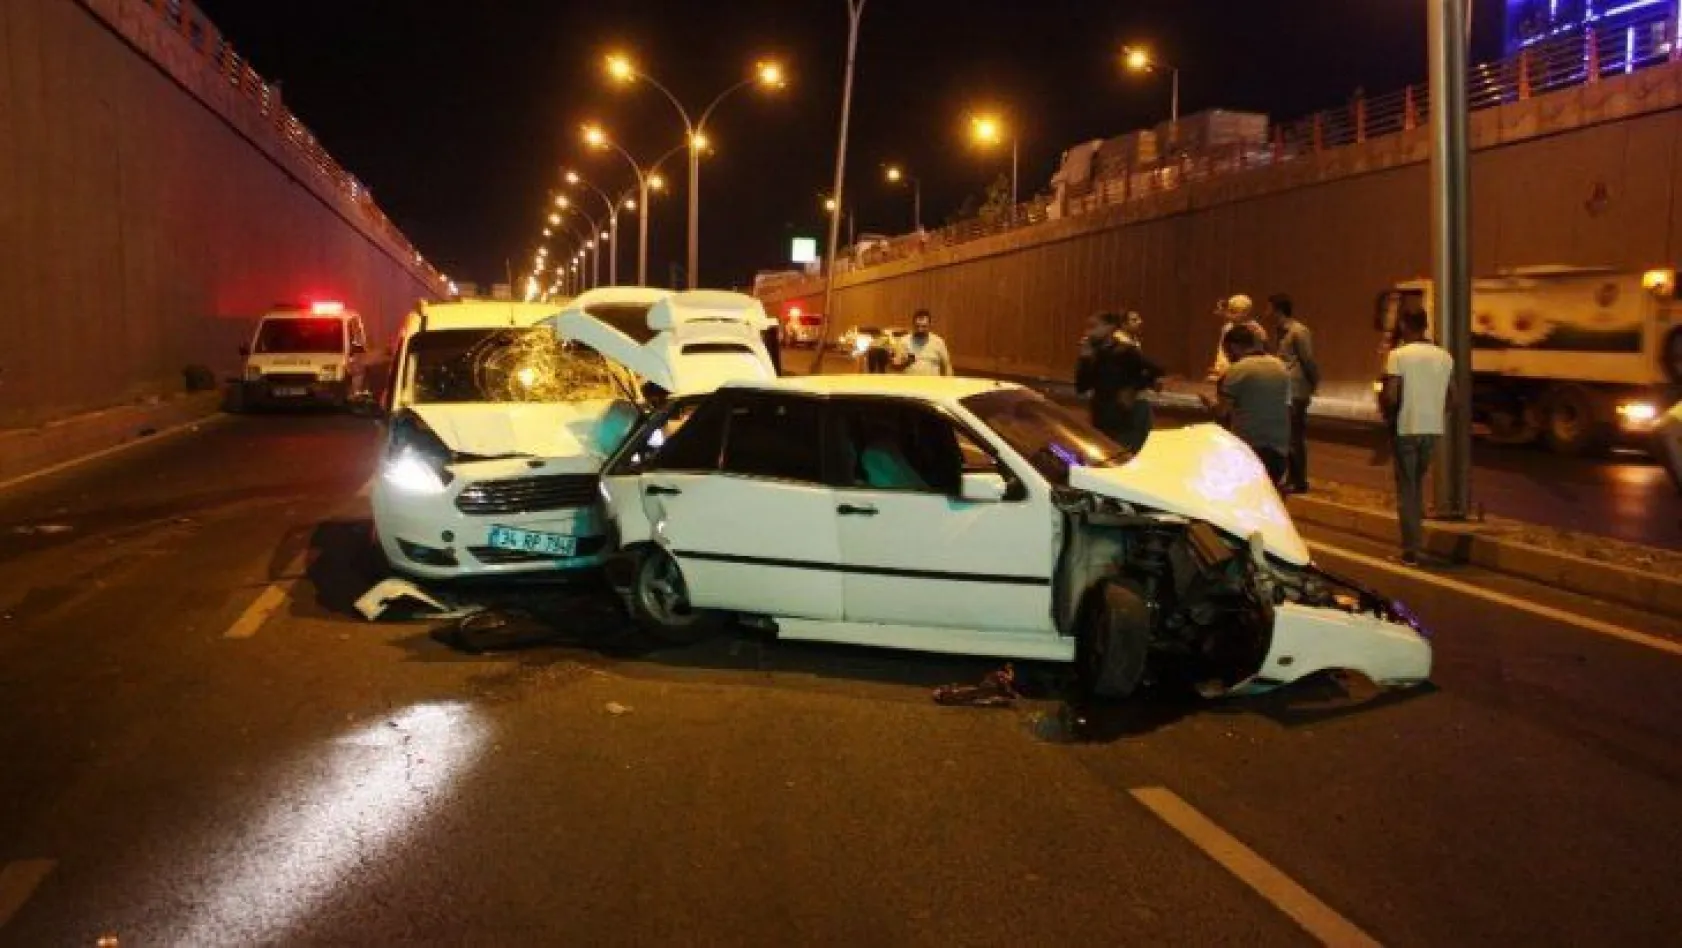 Kaza yapan otomobile yardıma gelenlere çarptı: 5 yaralı